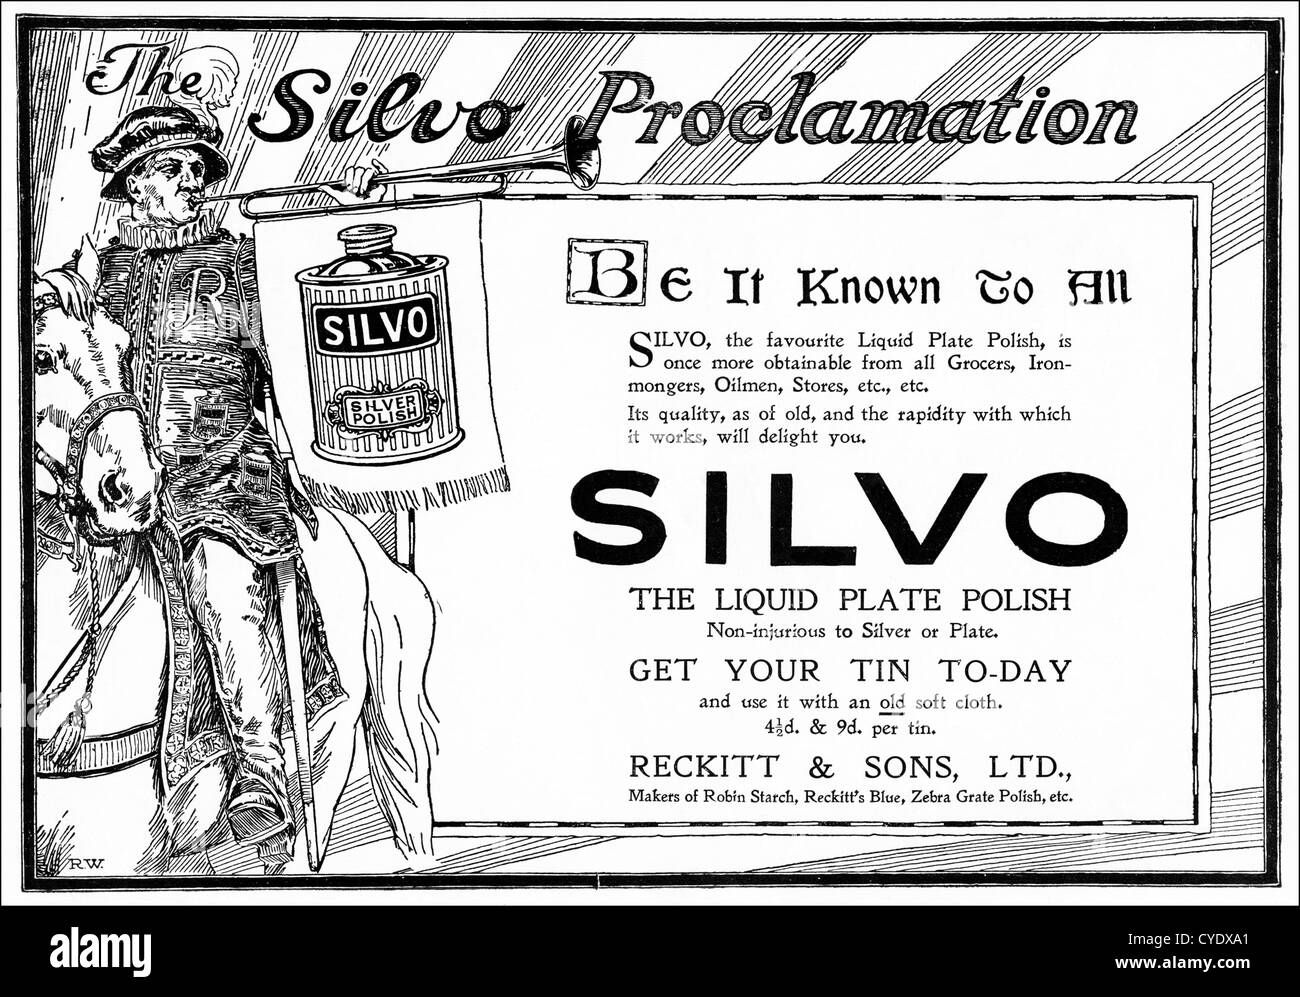 Original Vintage 1920 anuncio impreso de la revista inglesa publicidad Silvio polaco de plata Foto de stock